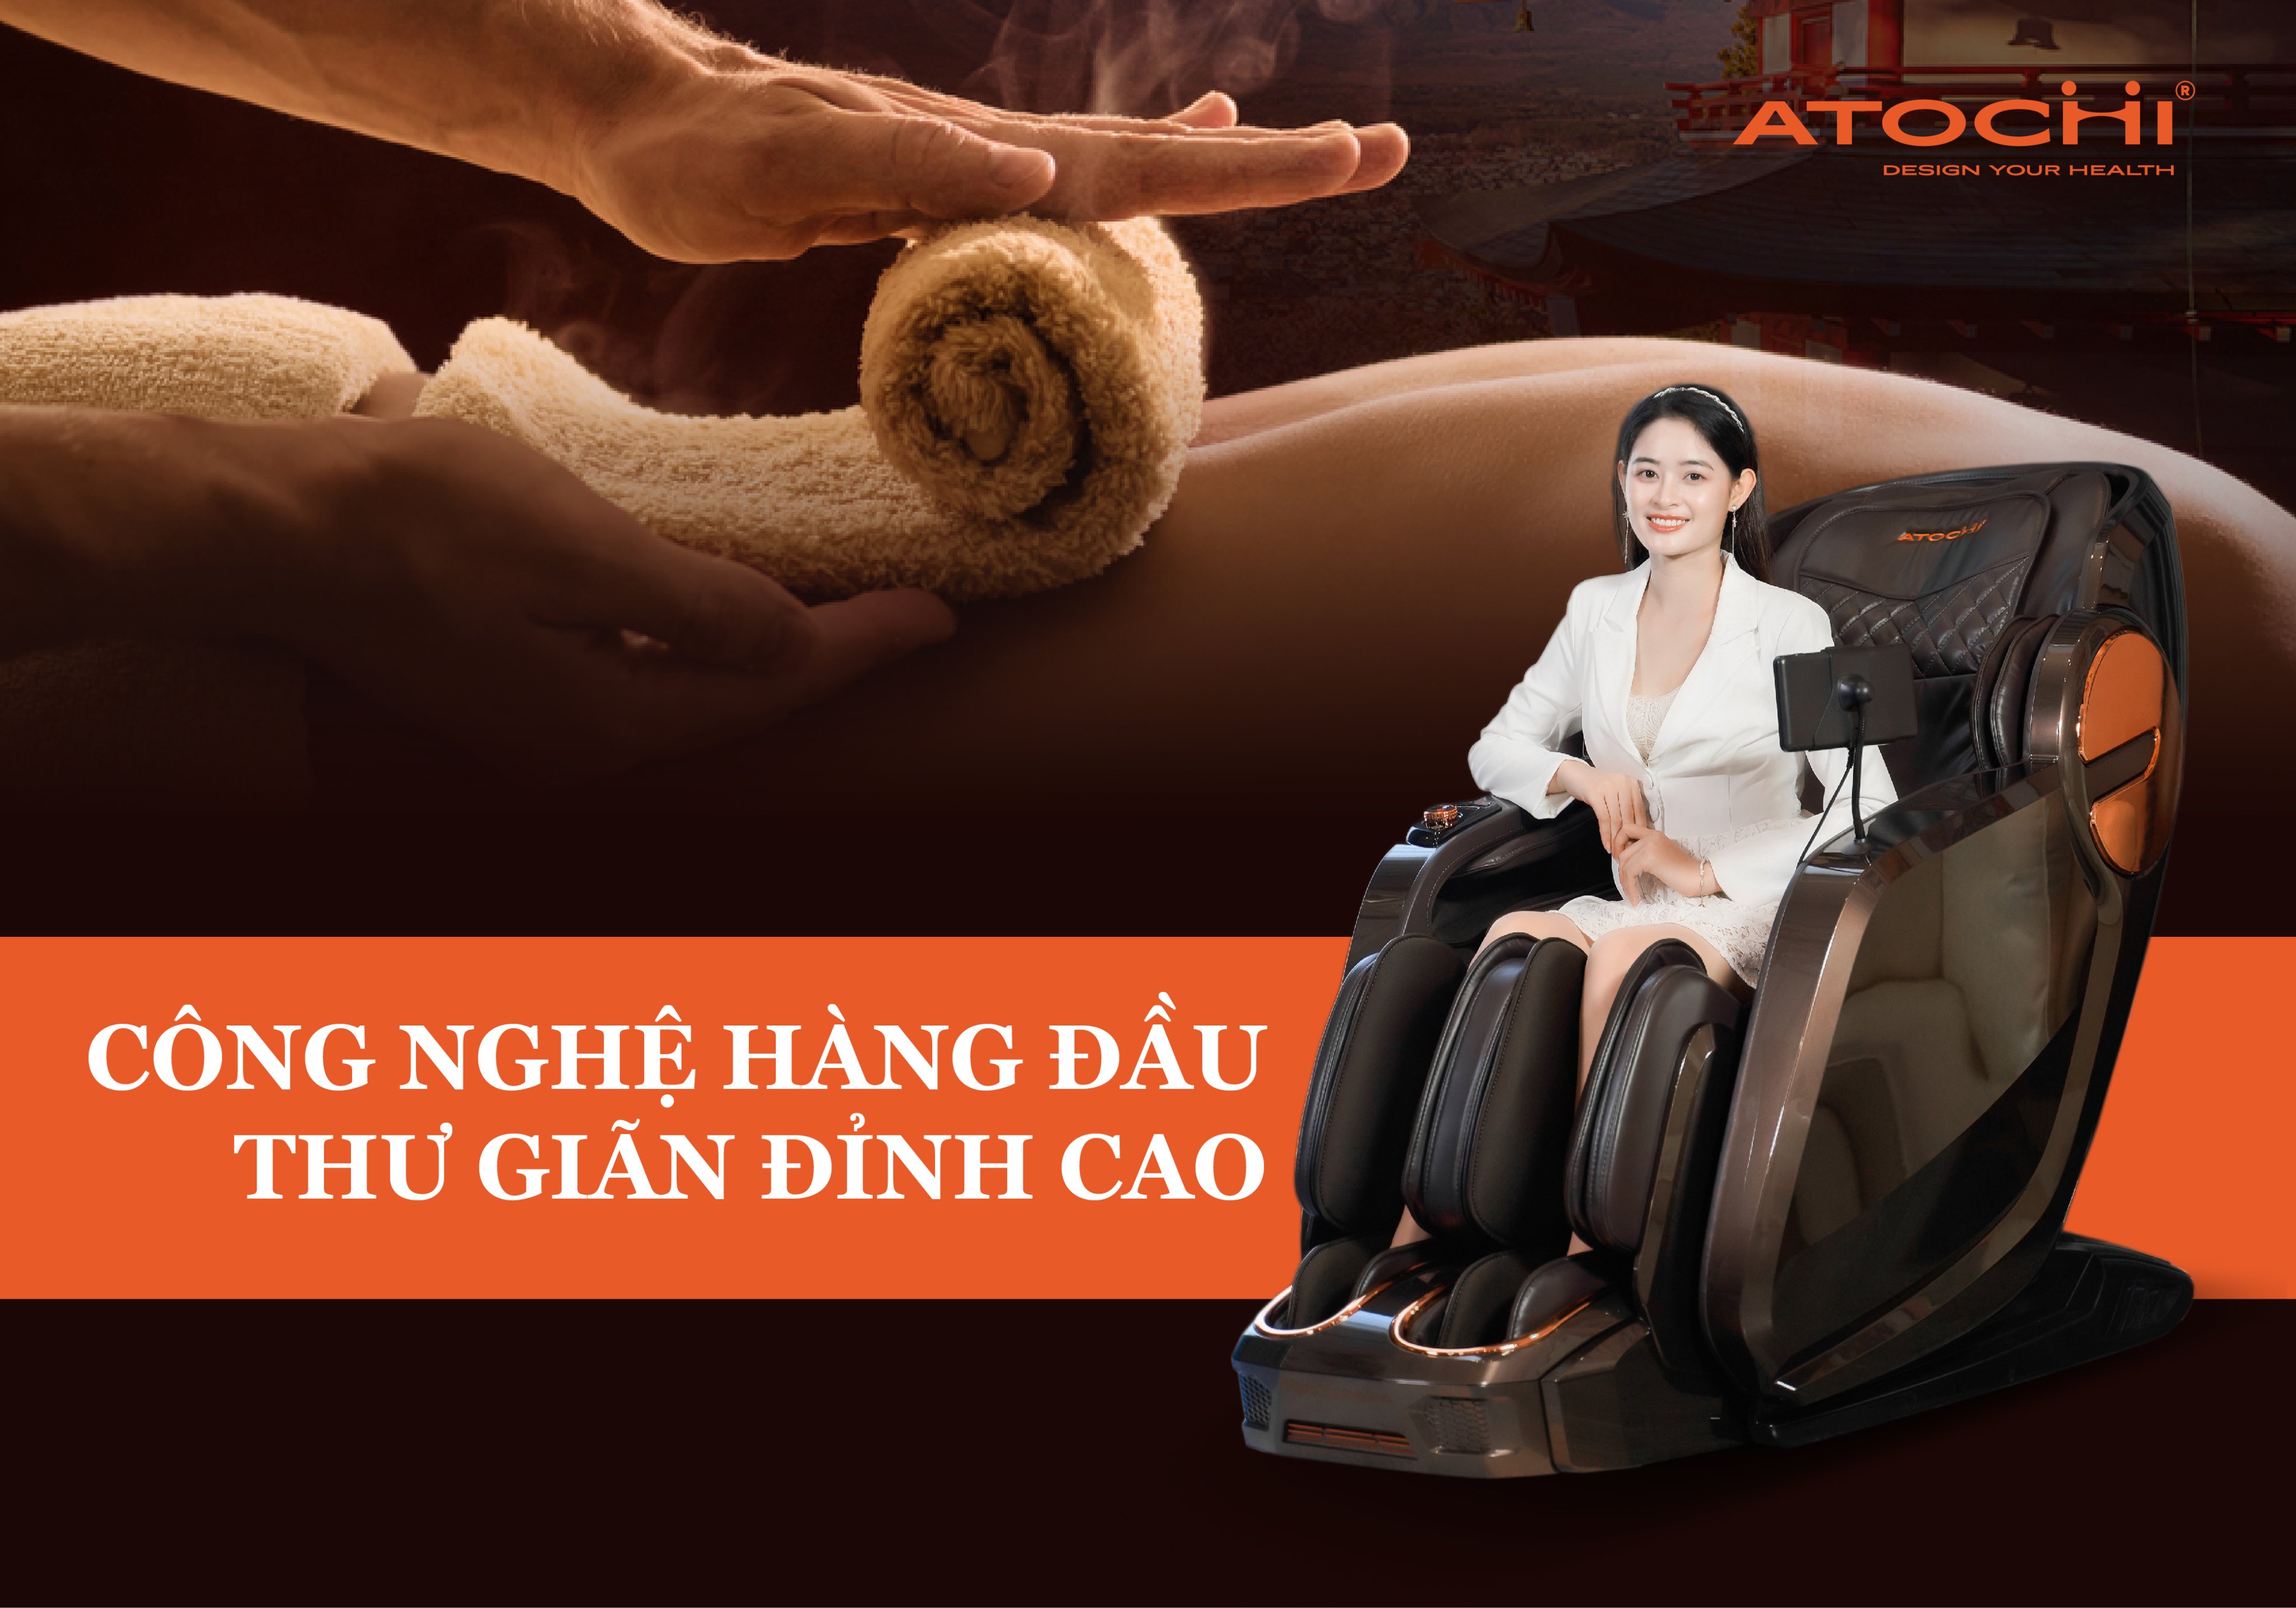 Ghế massage Atochi đi đầu công nghệ hiện đại